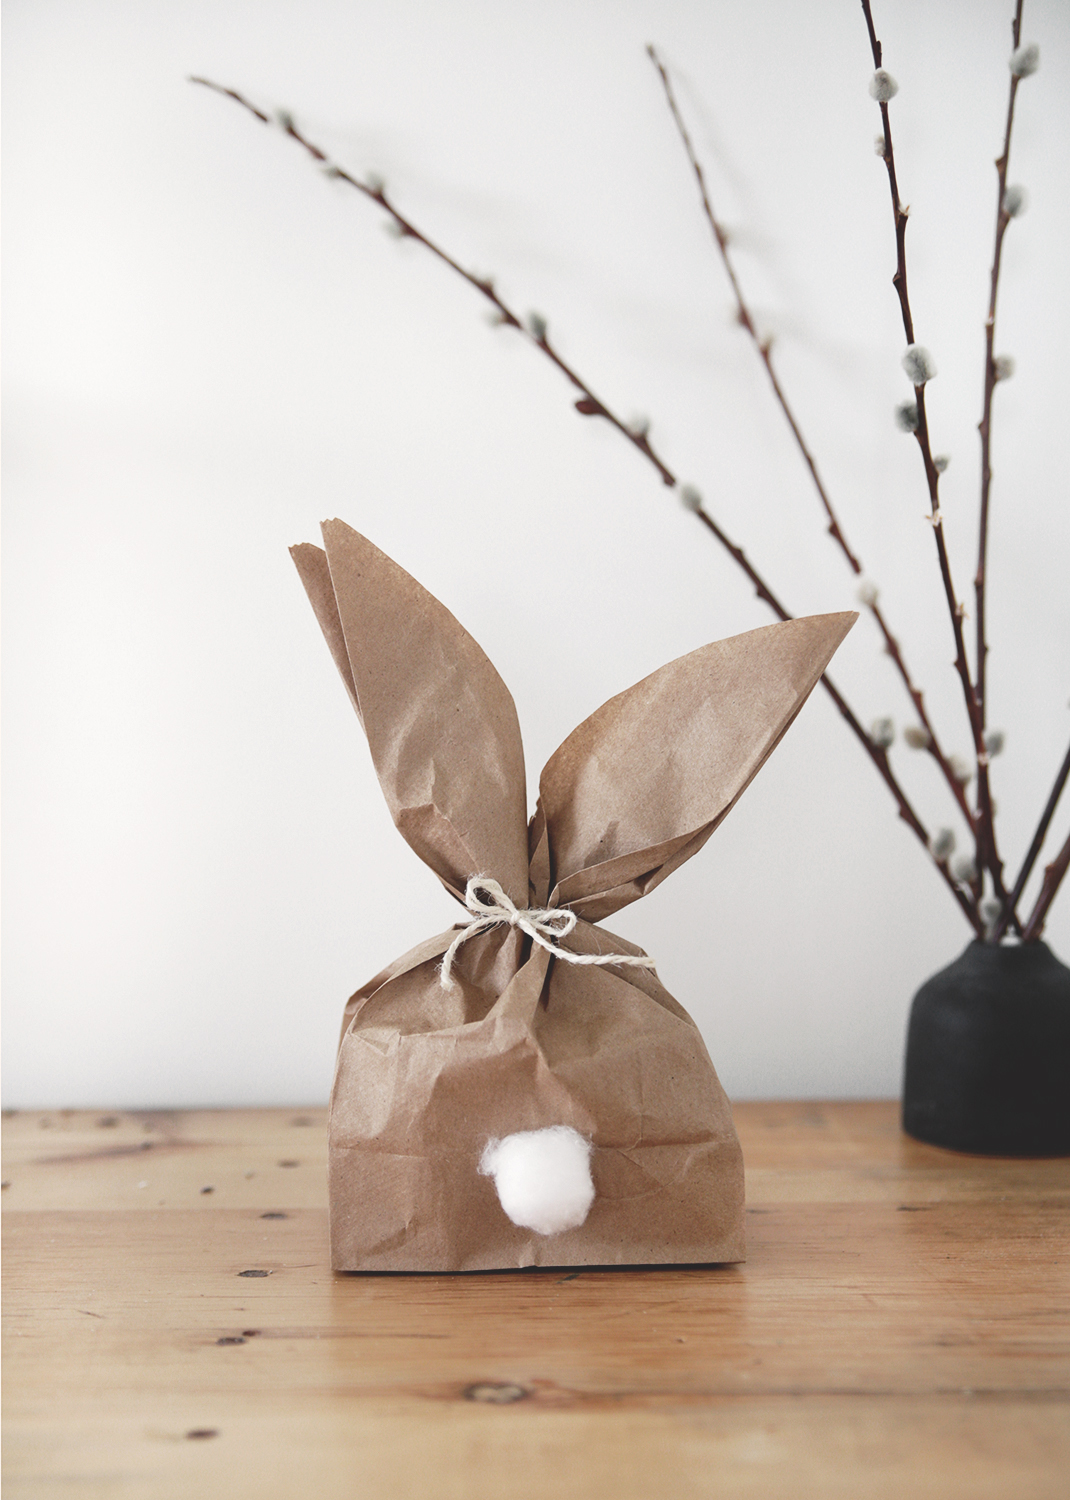 How to make paper bag, DIY paper bag, paper bag